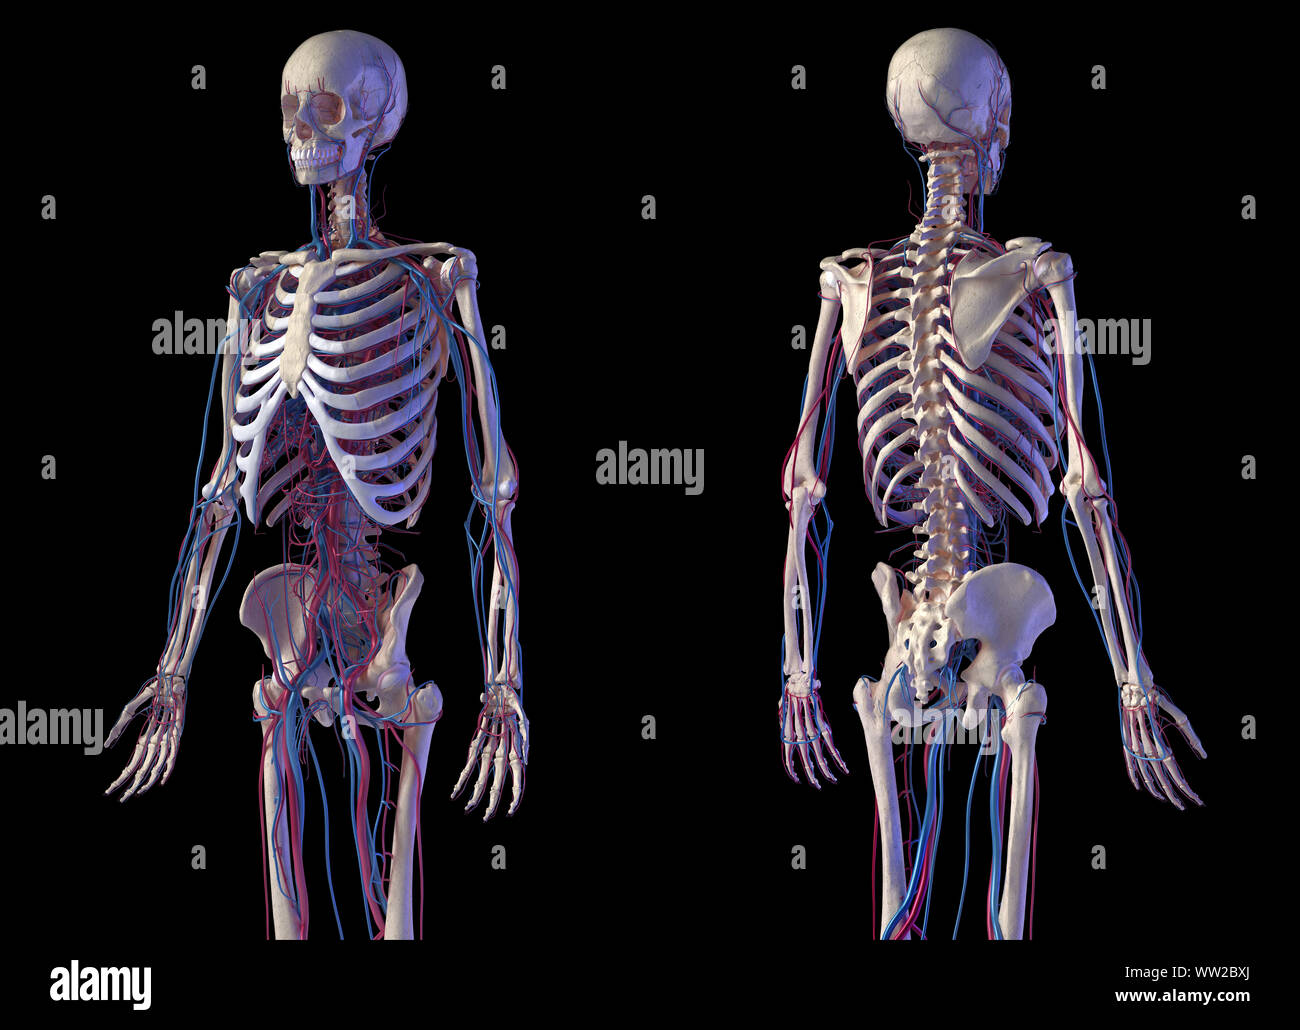 Menschliche Körper Anatomie. 3D-Darstellung von Knochen- und Herz-Kreislauf-System. Vorder- und Rückseite perspektivischen Ansichten. Auf schwarzem Hintergrund. Stockfoto